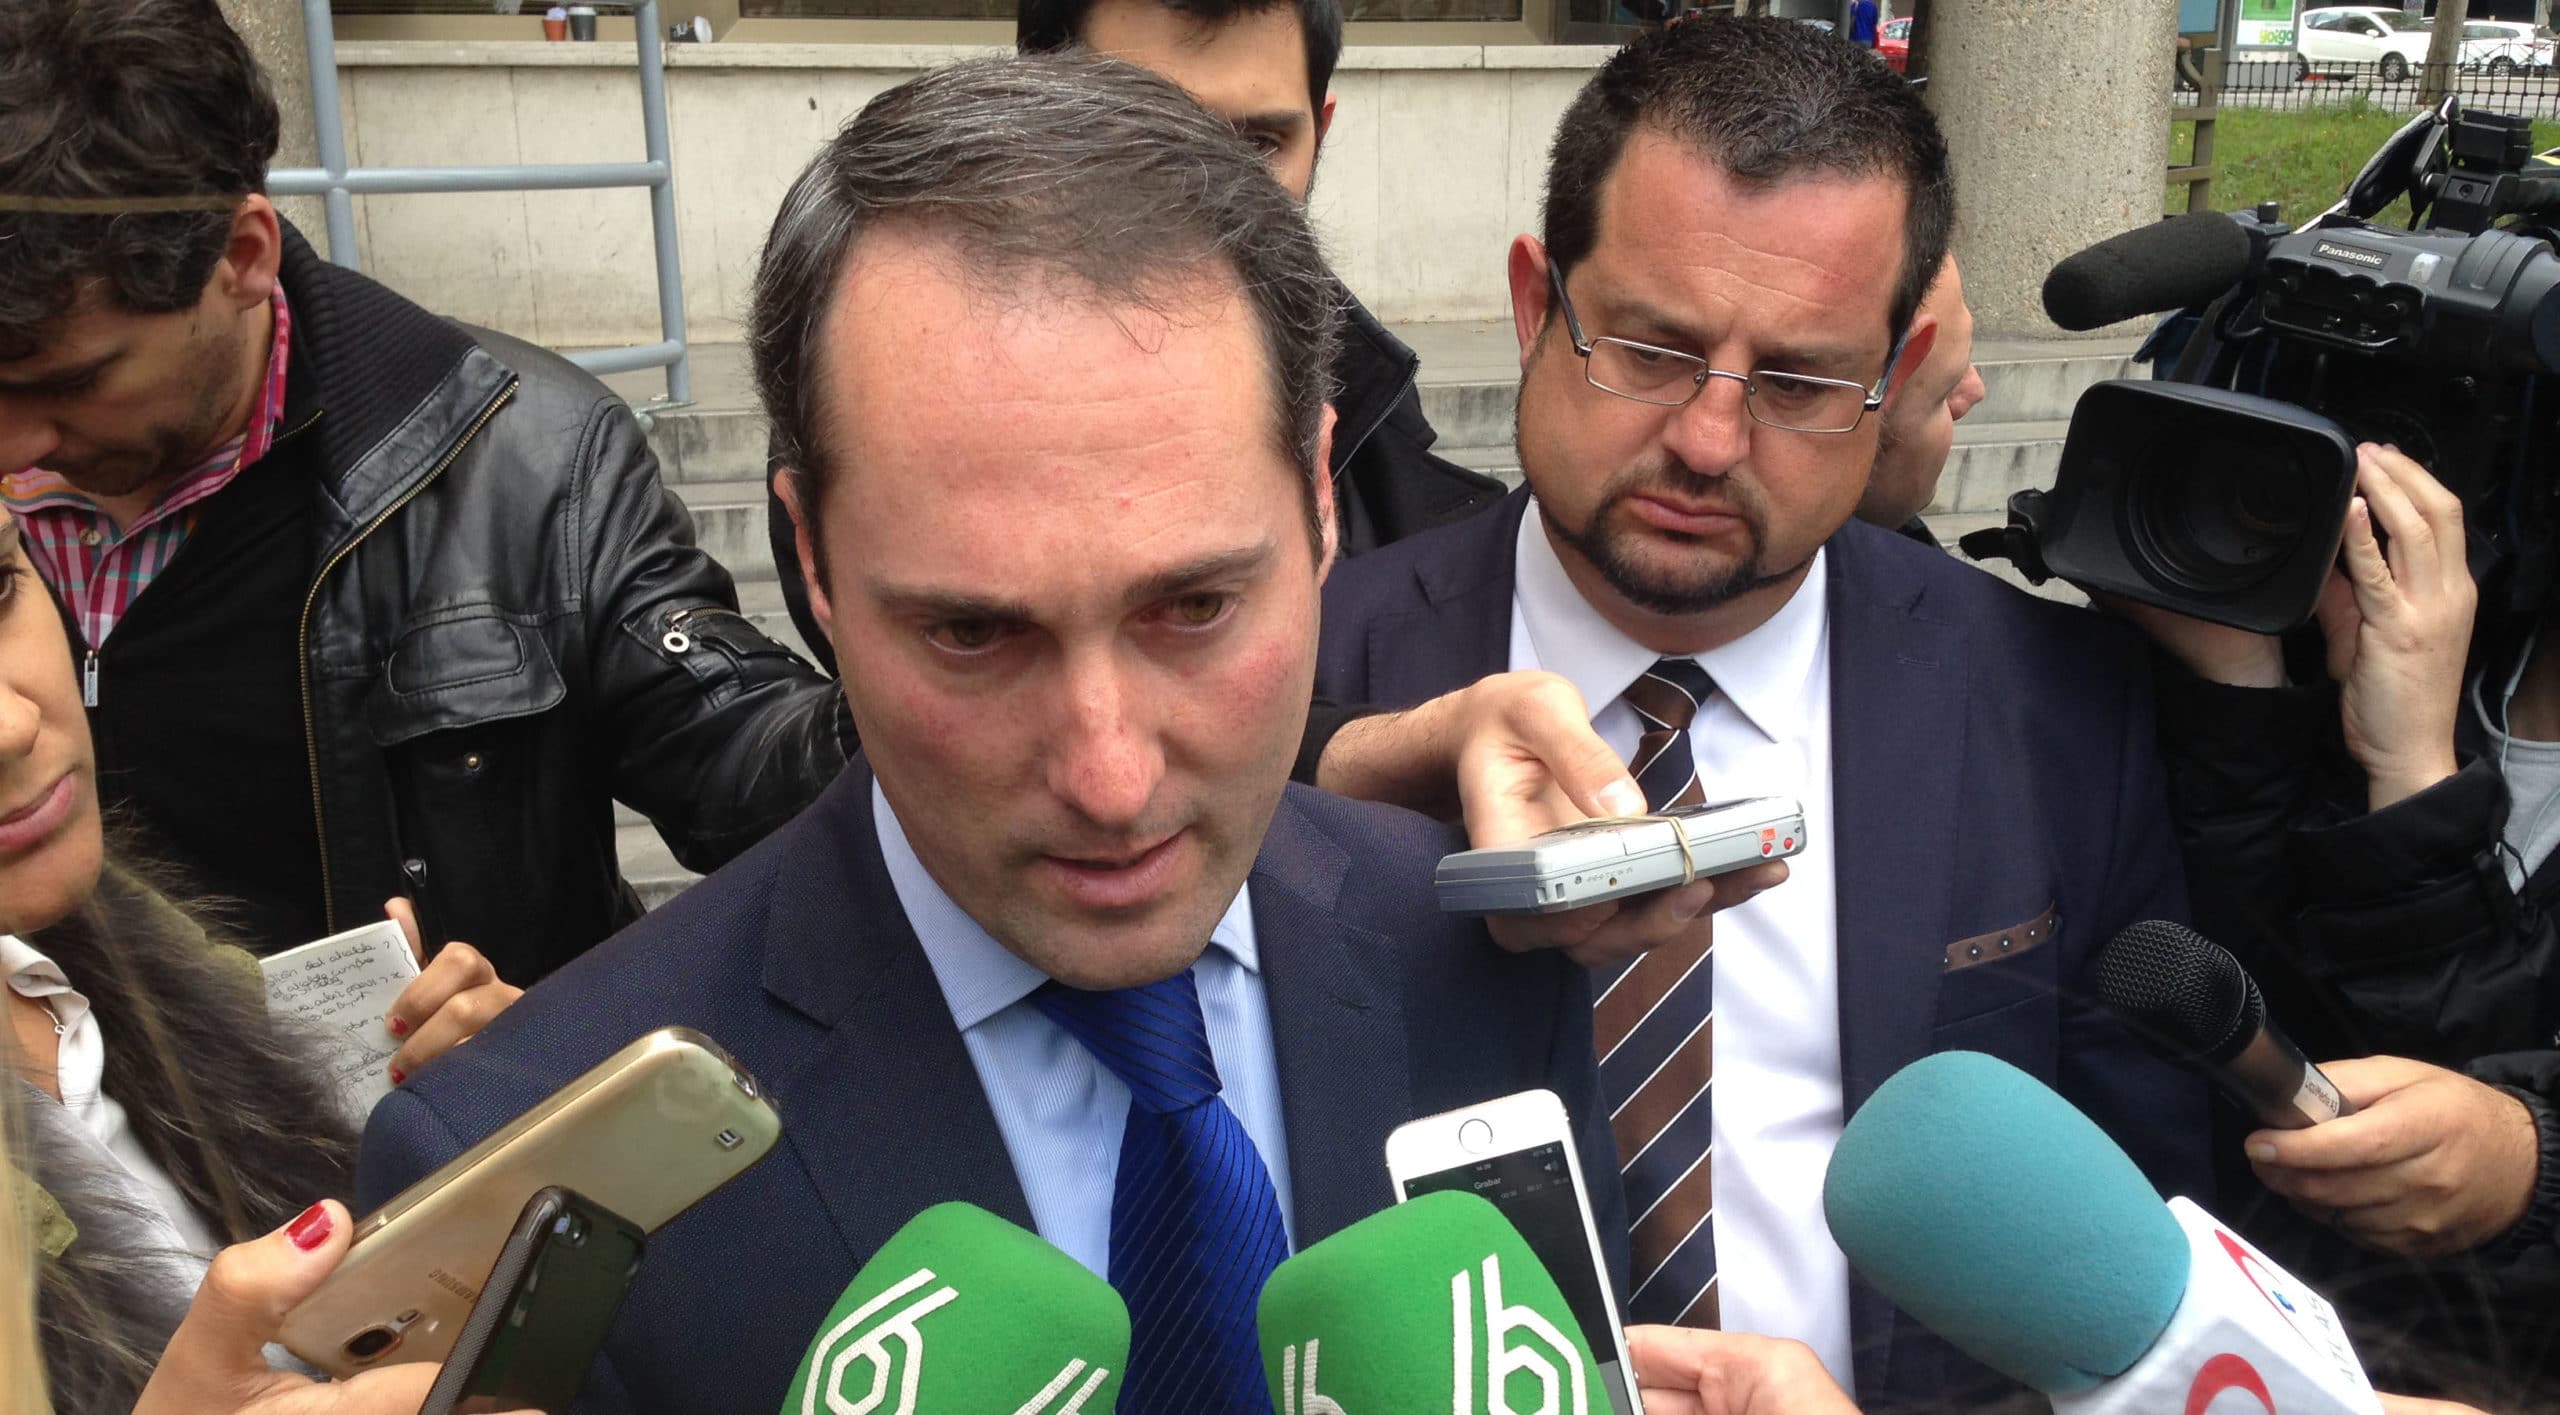 Juicio “Pequeño Nicolás”: “Nueve años de banquillo público han sido una tortura que va a llegar a su fin”, afirma Emilio García Grande